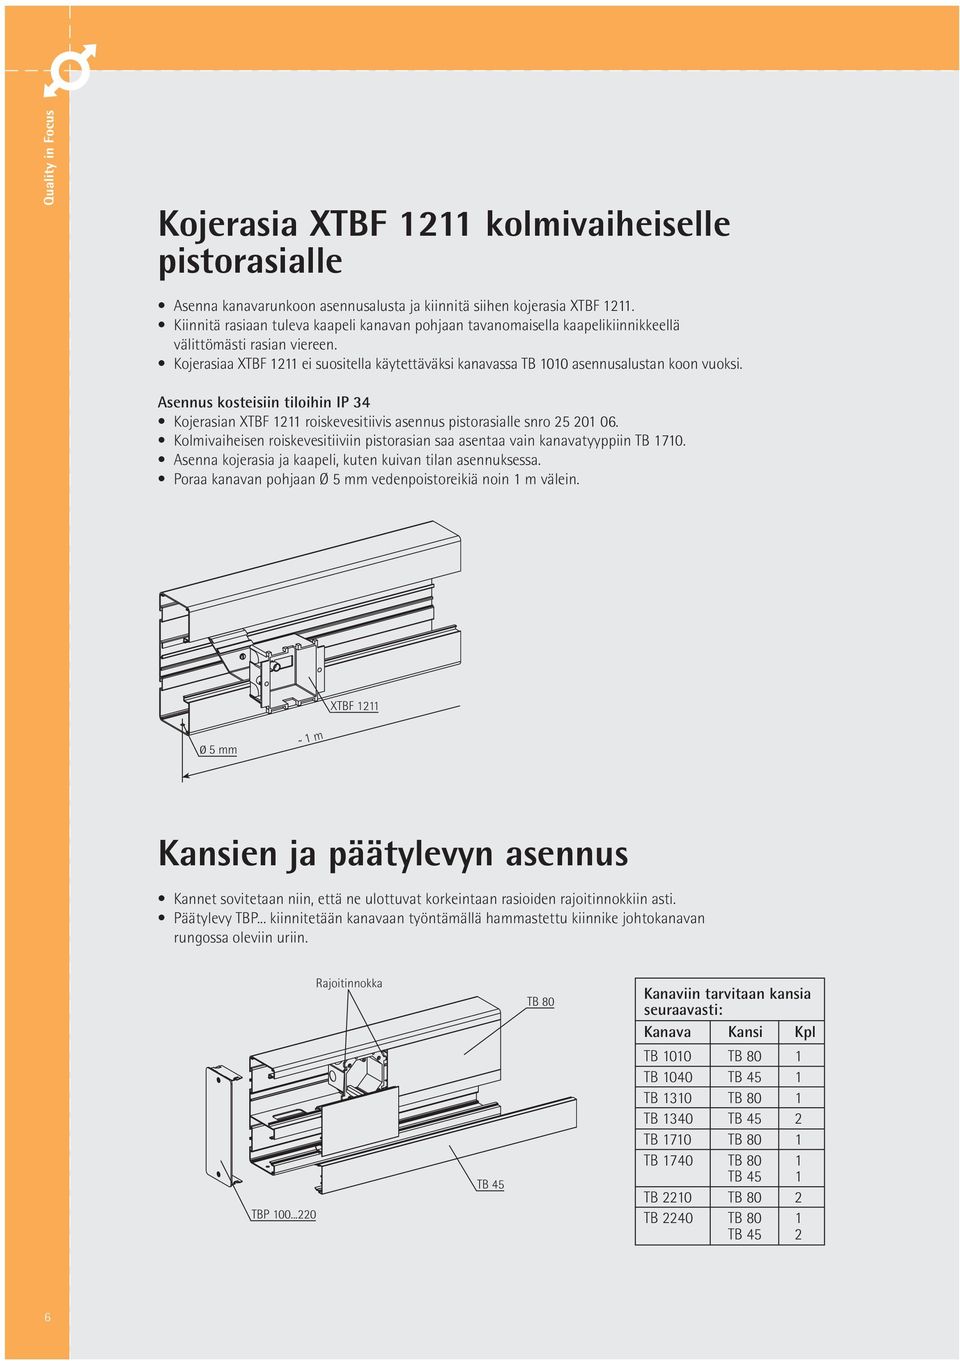 Kojerasiaa XTBF 1211 ei suositella käytettäväksi kanavassa TB 1010 asennusalustan koon vuoksi.